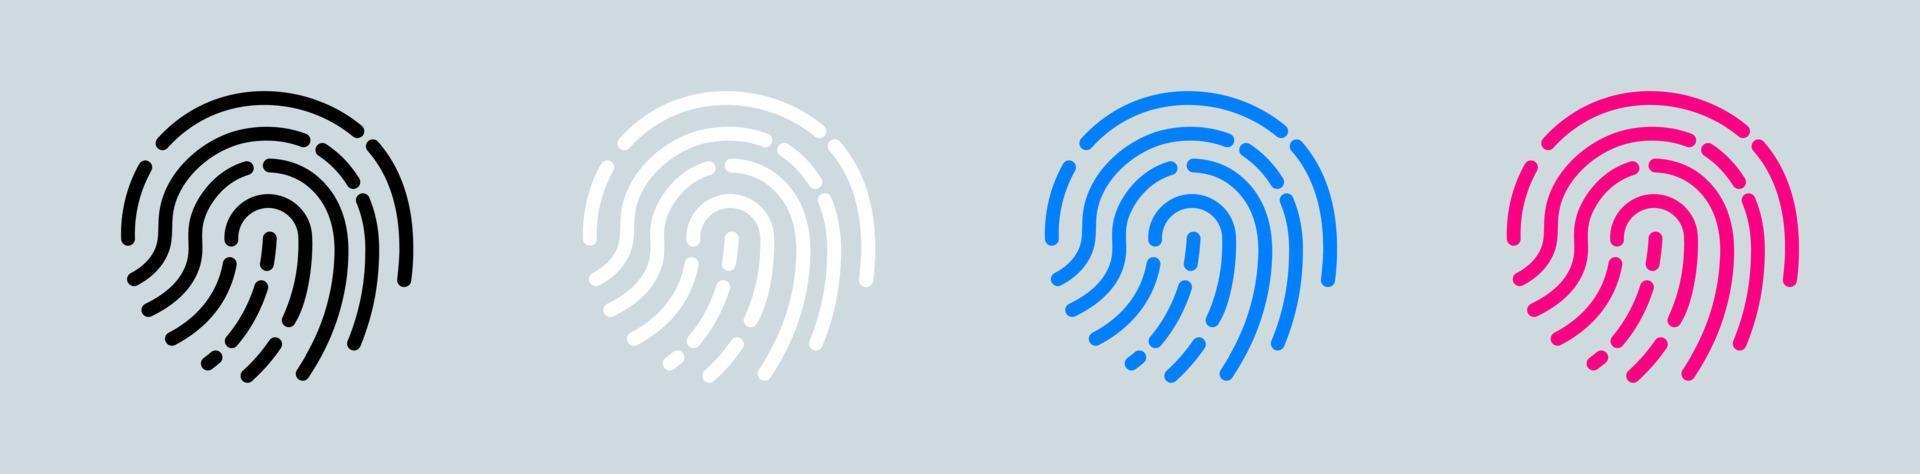 toque el vector del dedo del icono de identificación aislado en el fondo. establezca el signo del icono de escaneo de huellas dactilares en blanco y negro.